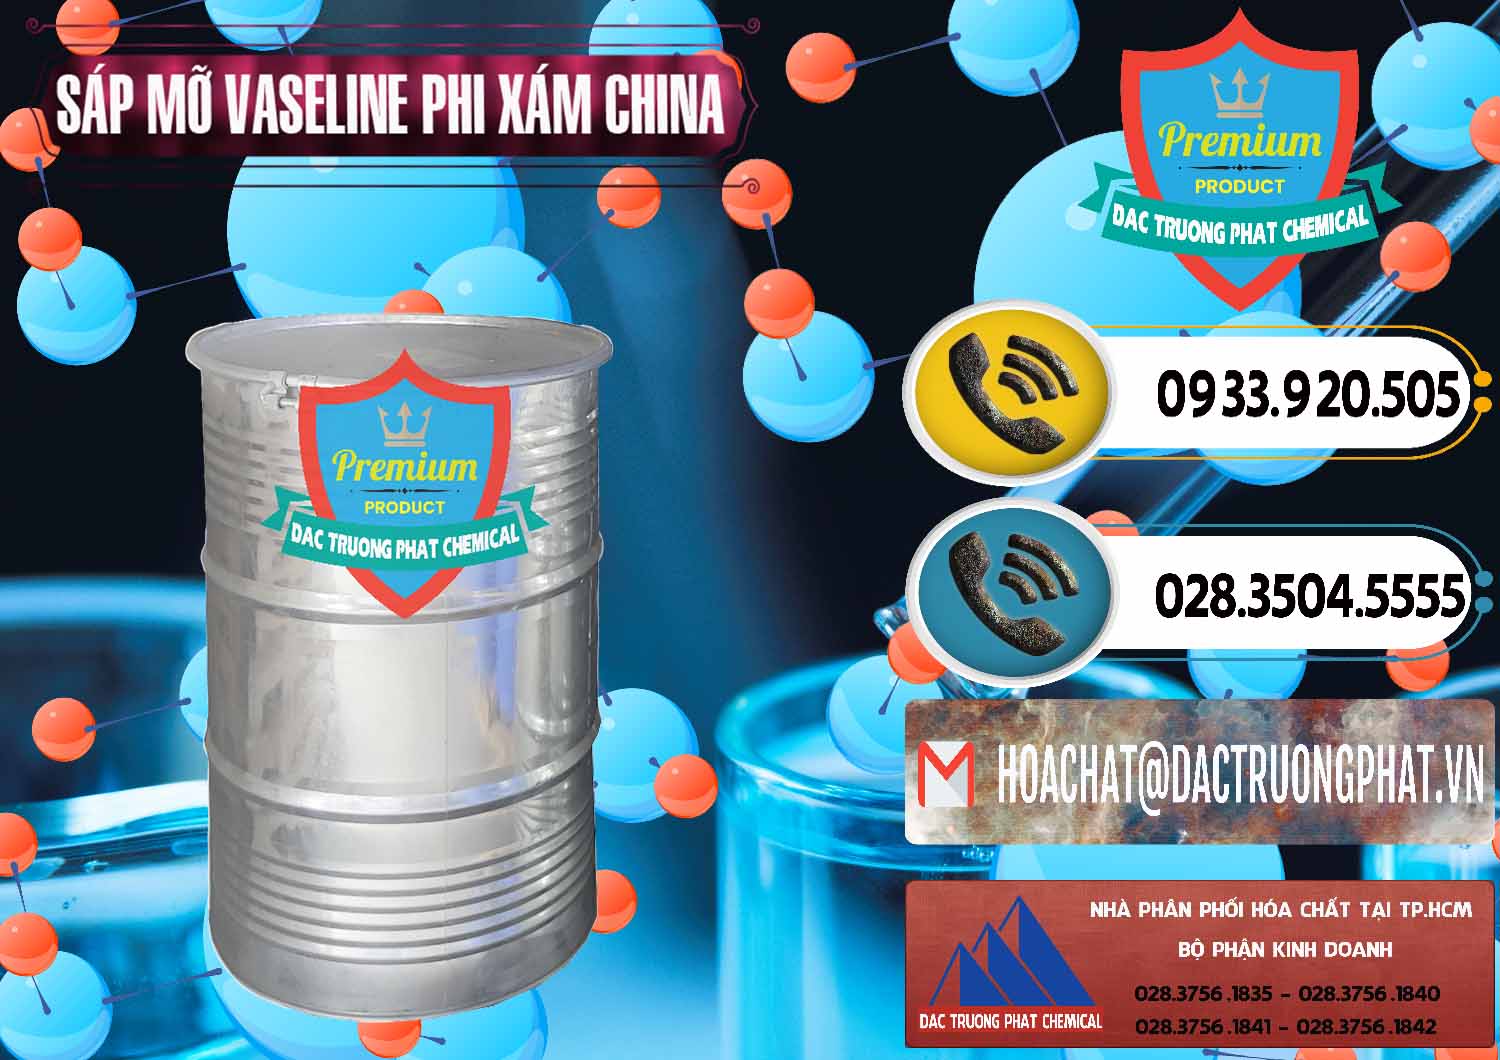 Công ty chuyên cung cấp _ bán Sáp Mỡ Vaseline Phi Xám Trung Quốc China - 0291 - Chuyên phân phối _ bán hóa chất tại TP.HCM - hoachatdetnhuom.vn